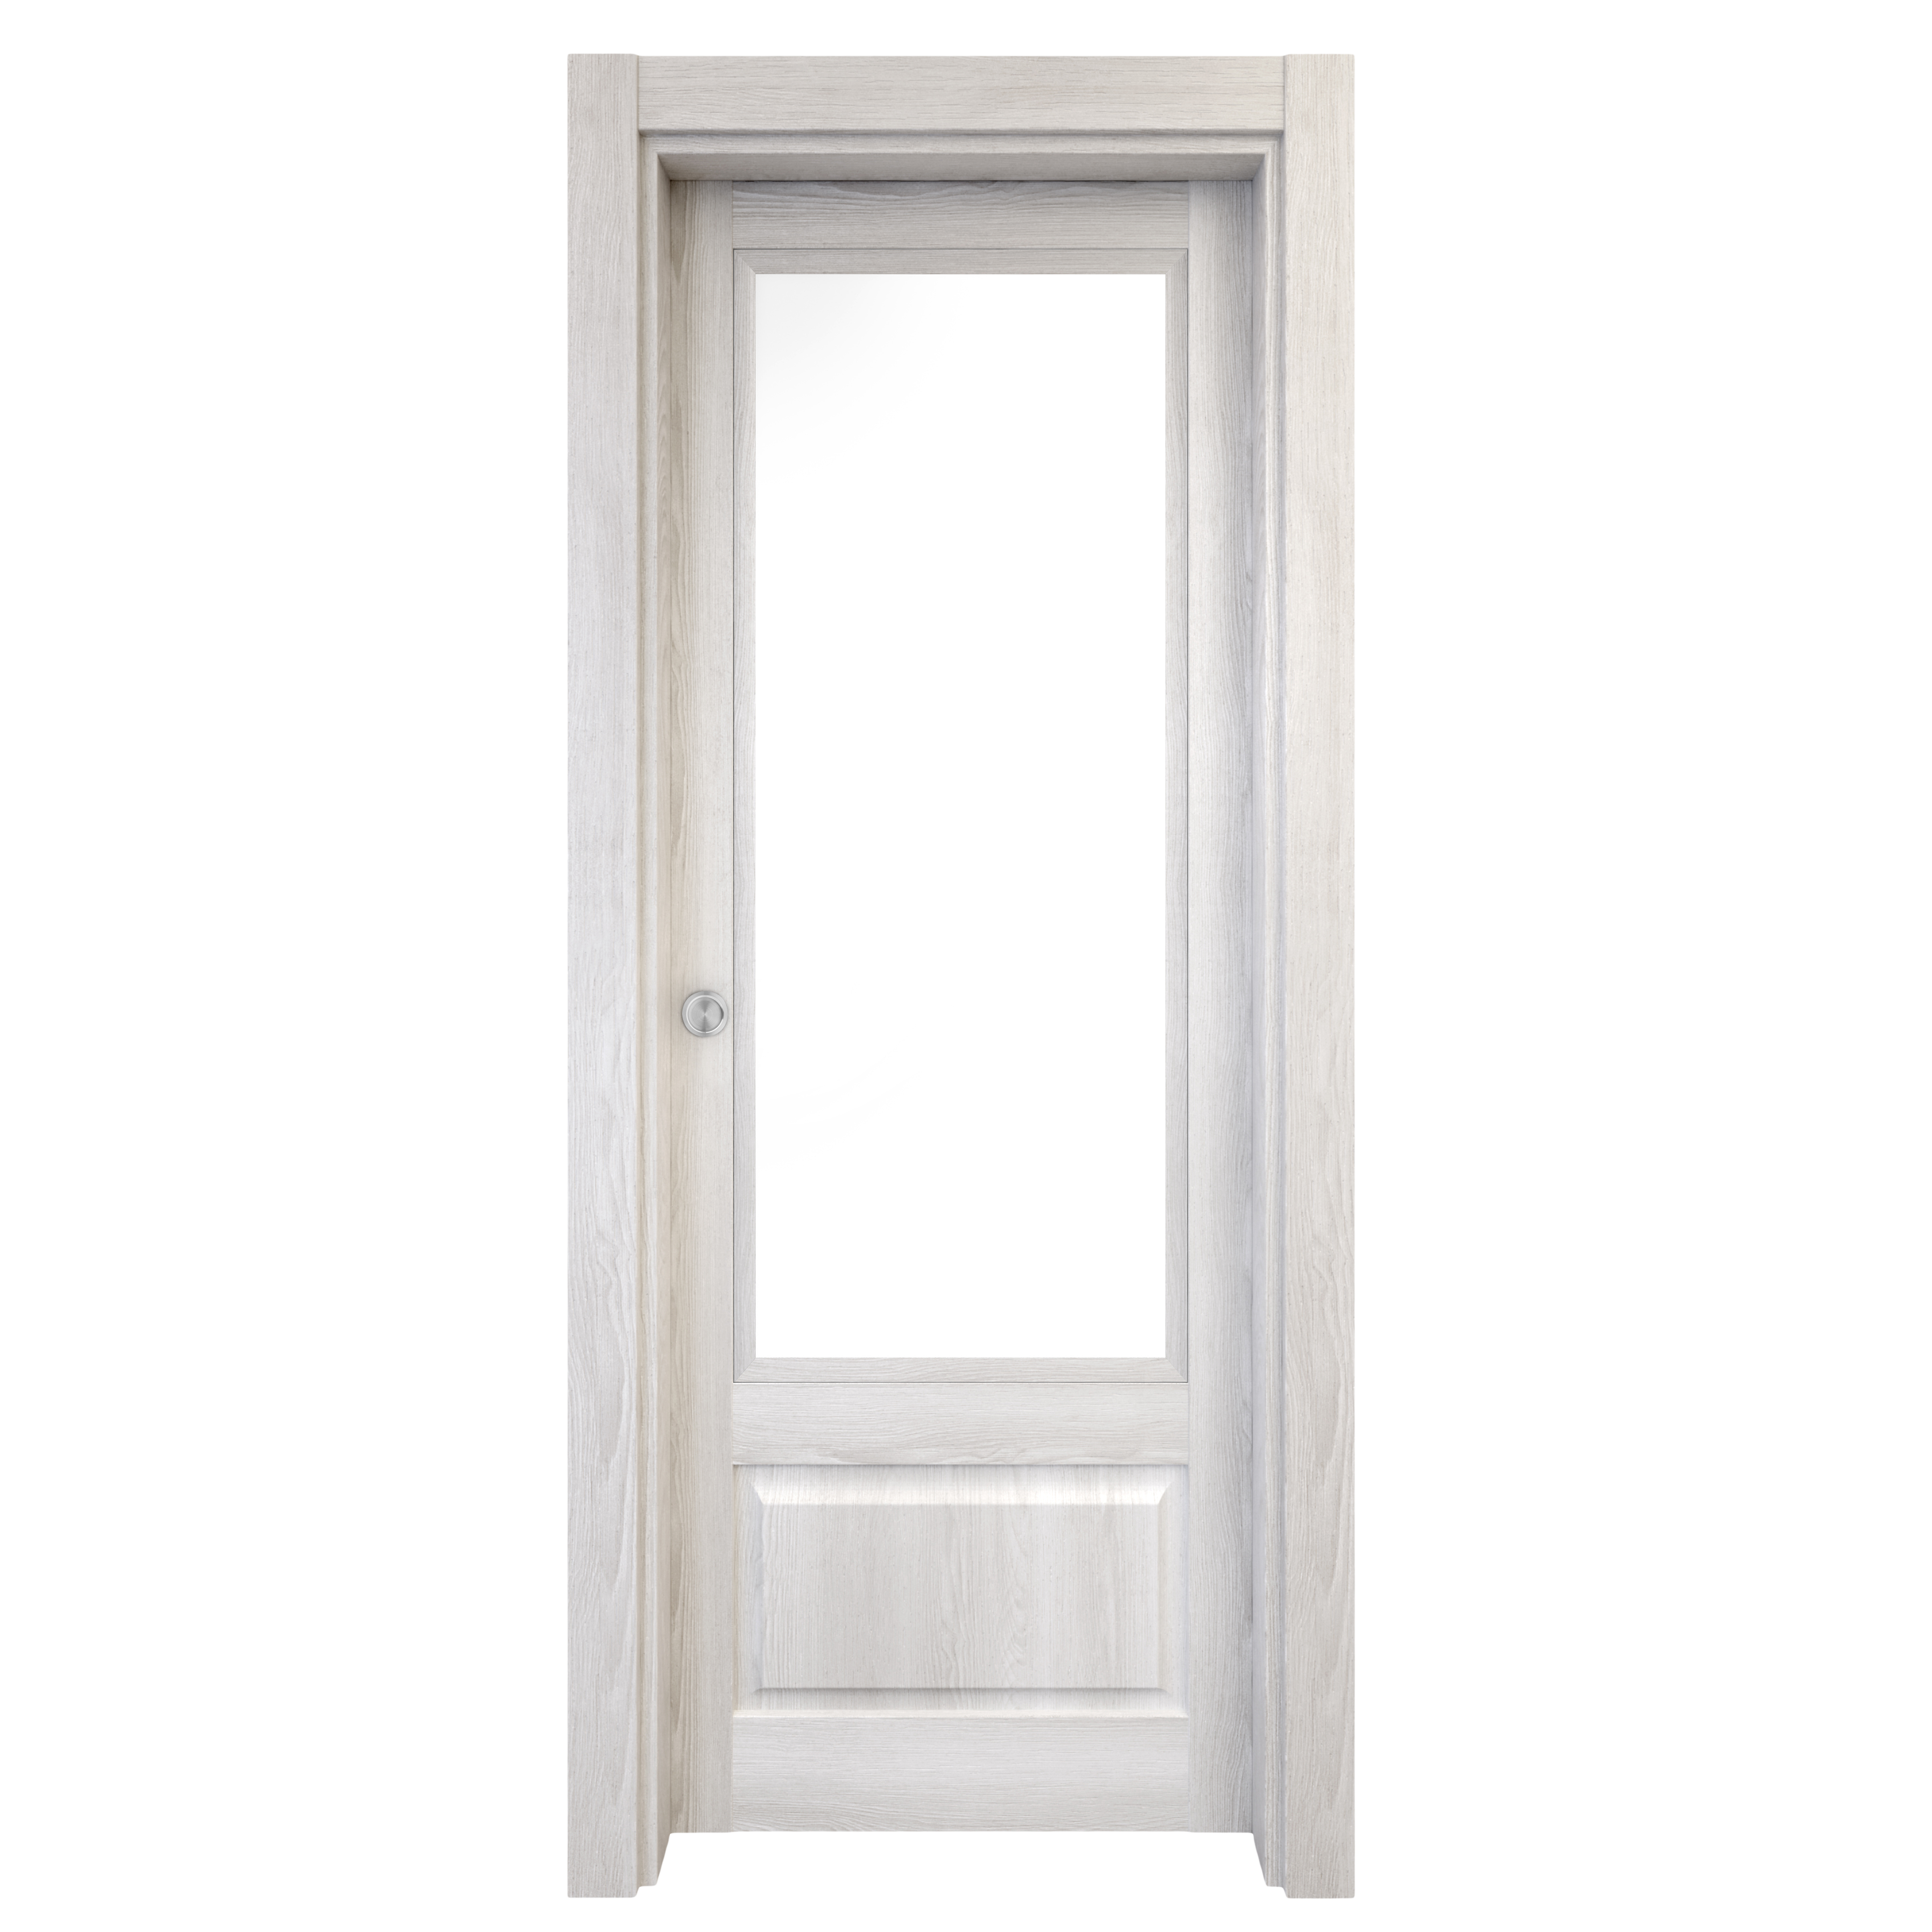 Puerta corredera sofia blanca line plus blanco con cristal de 62.5x203cm